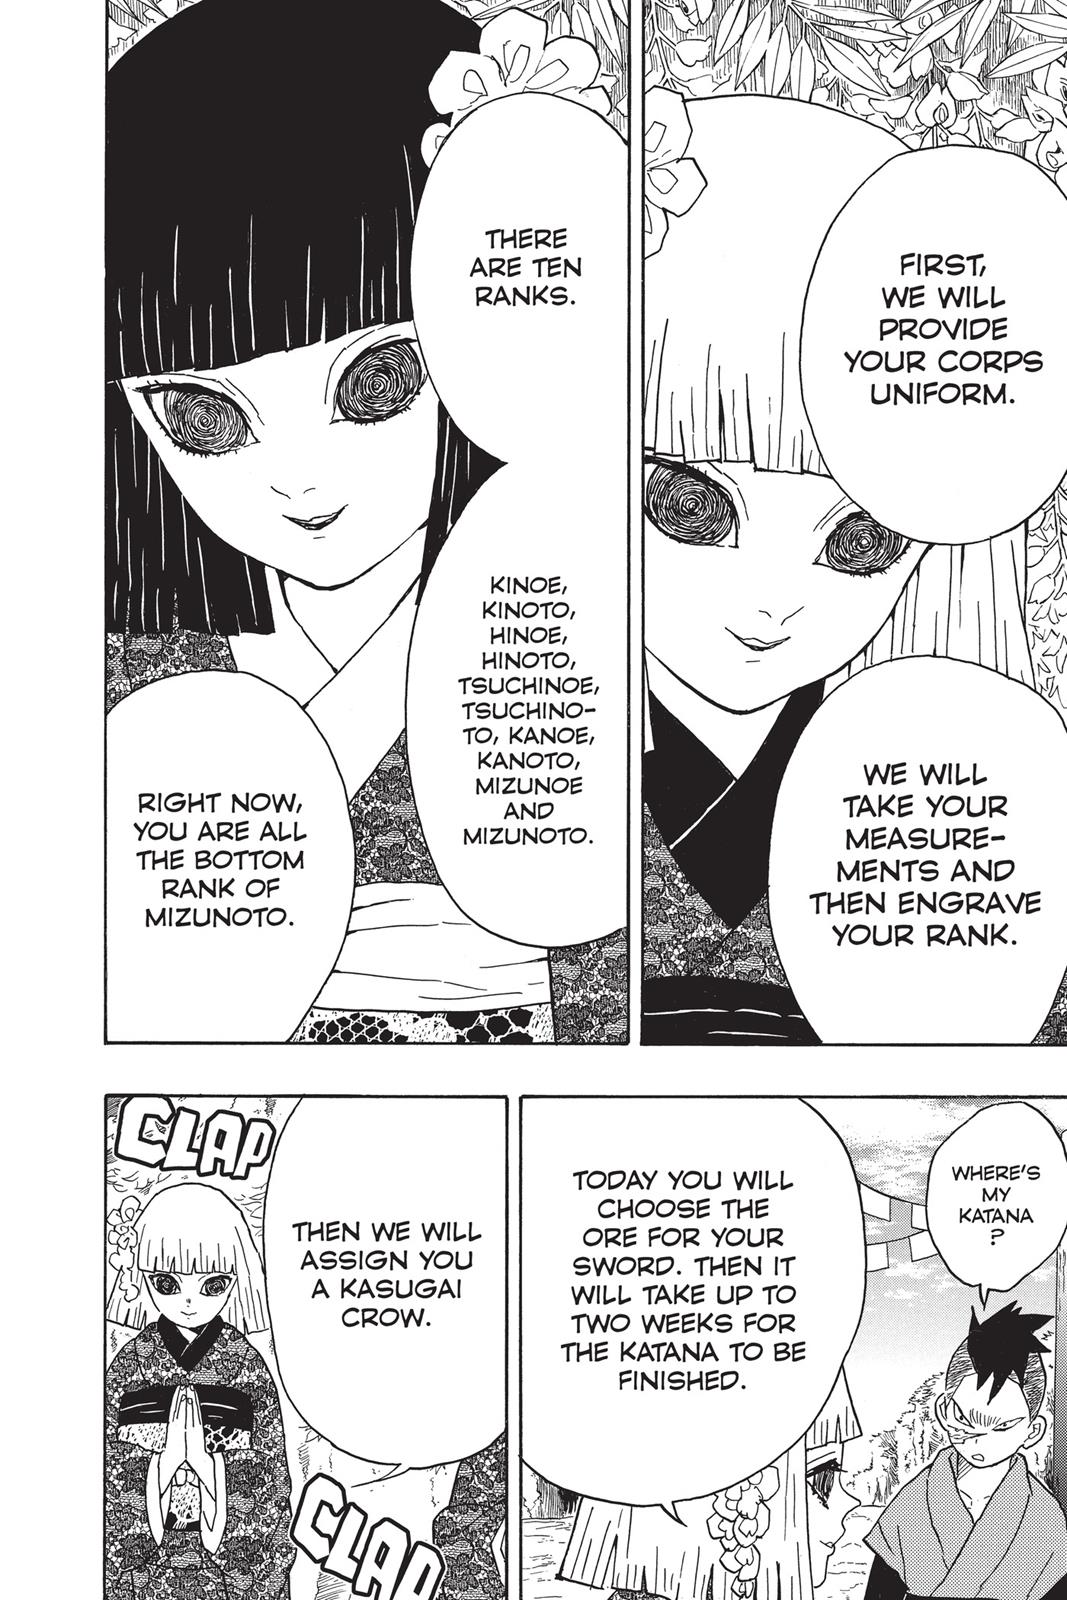 Demon Slayer Manga Manga Chapter - 8 - image 13